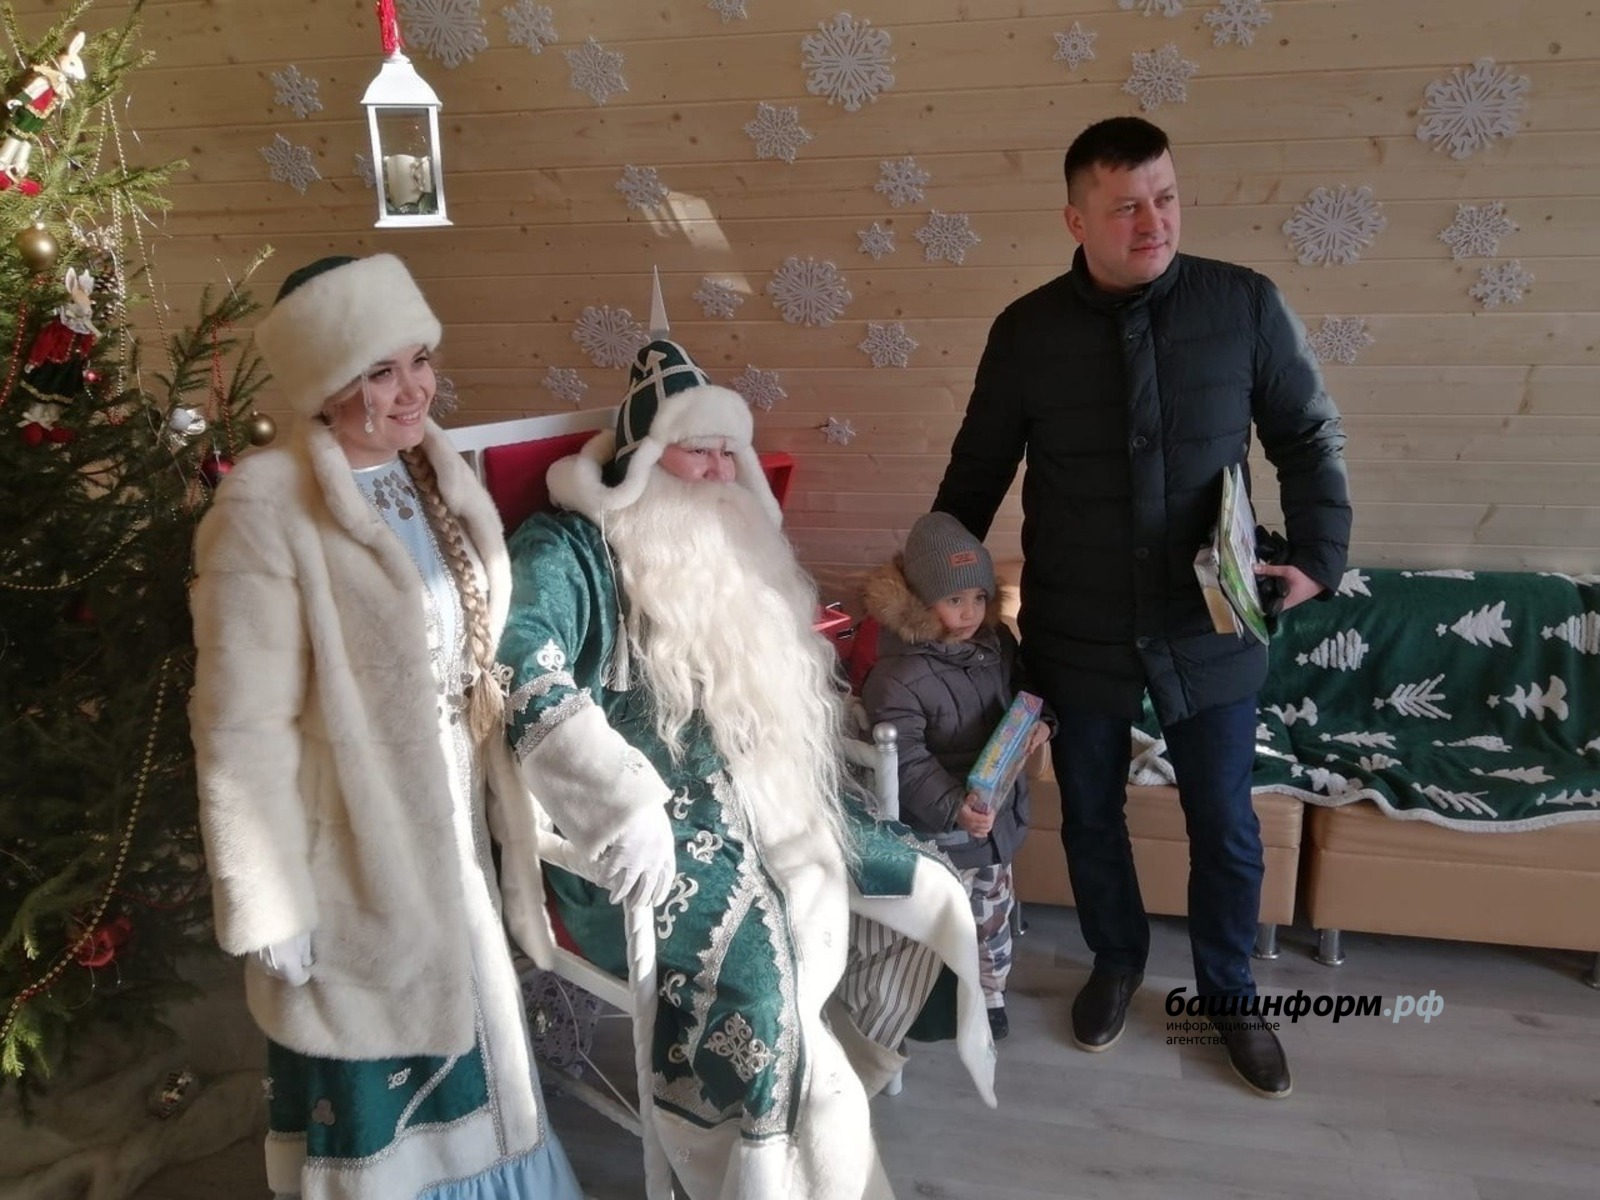 Группа резиденции Деда Мороза Уфы во ВКонтакте